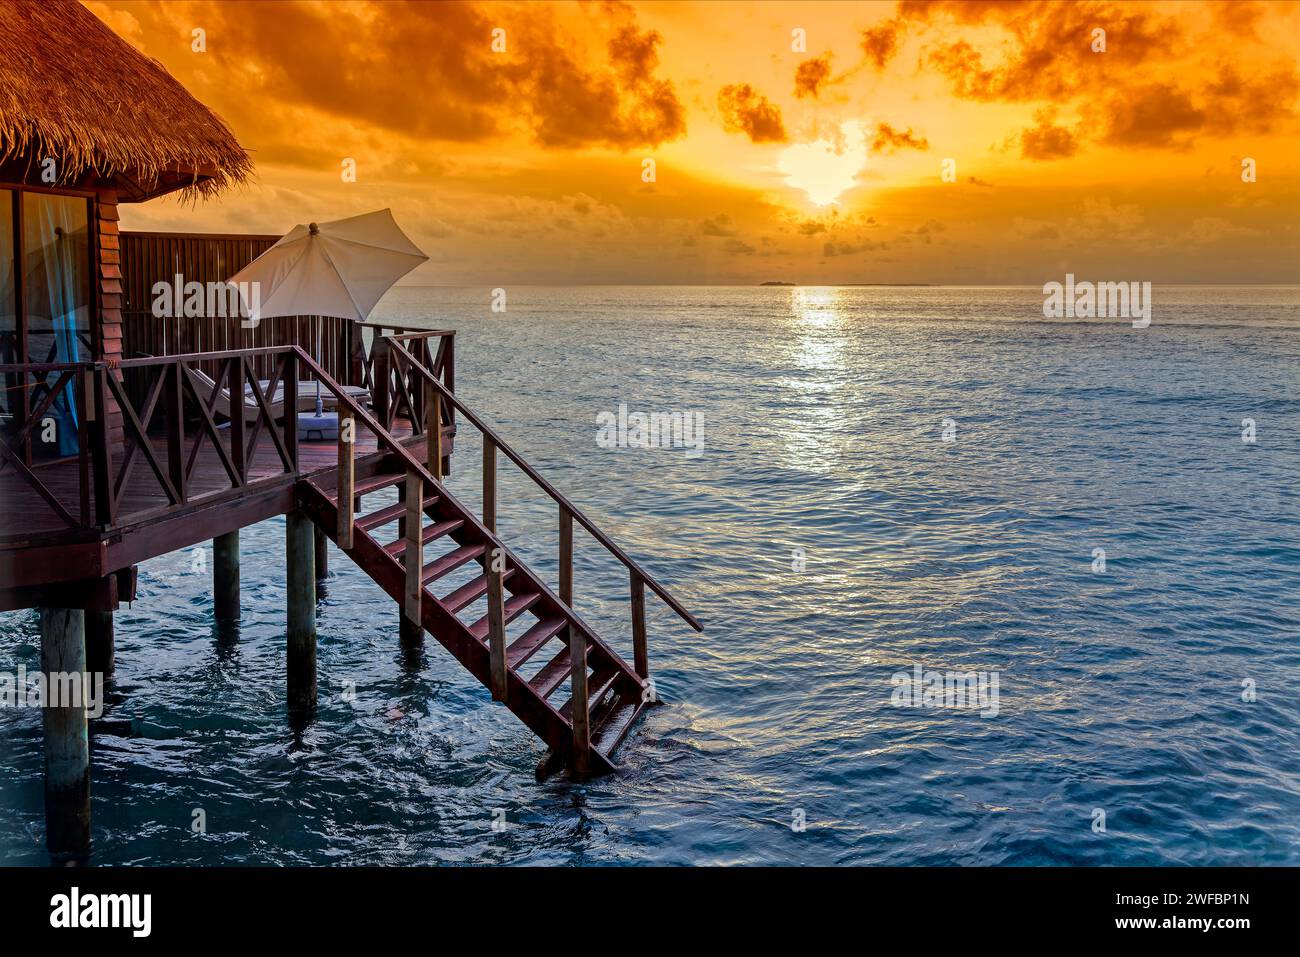 Sonnenaufgang oder Sonnenuntergang über Wasserbungalow auf Stelzen mit Treppen ins Meer auf einer tropischen Insel, Malediven, Indischen Ozean Stockfoto